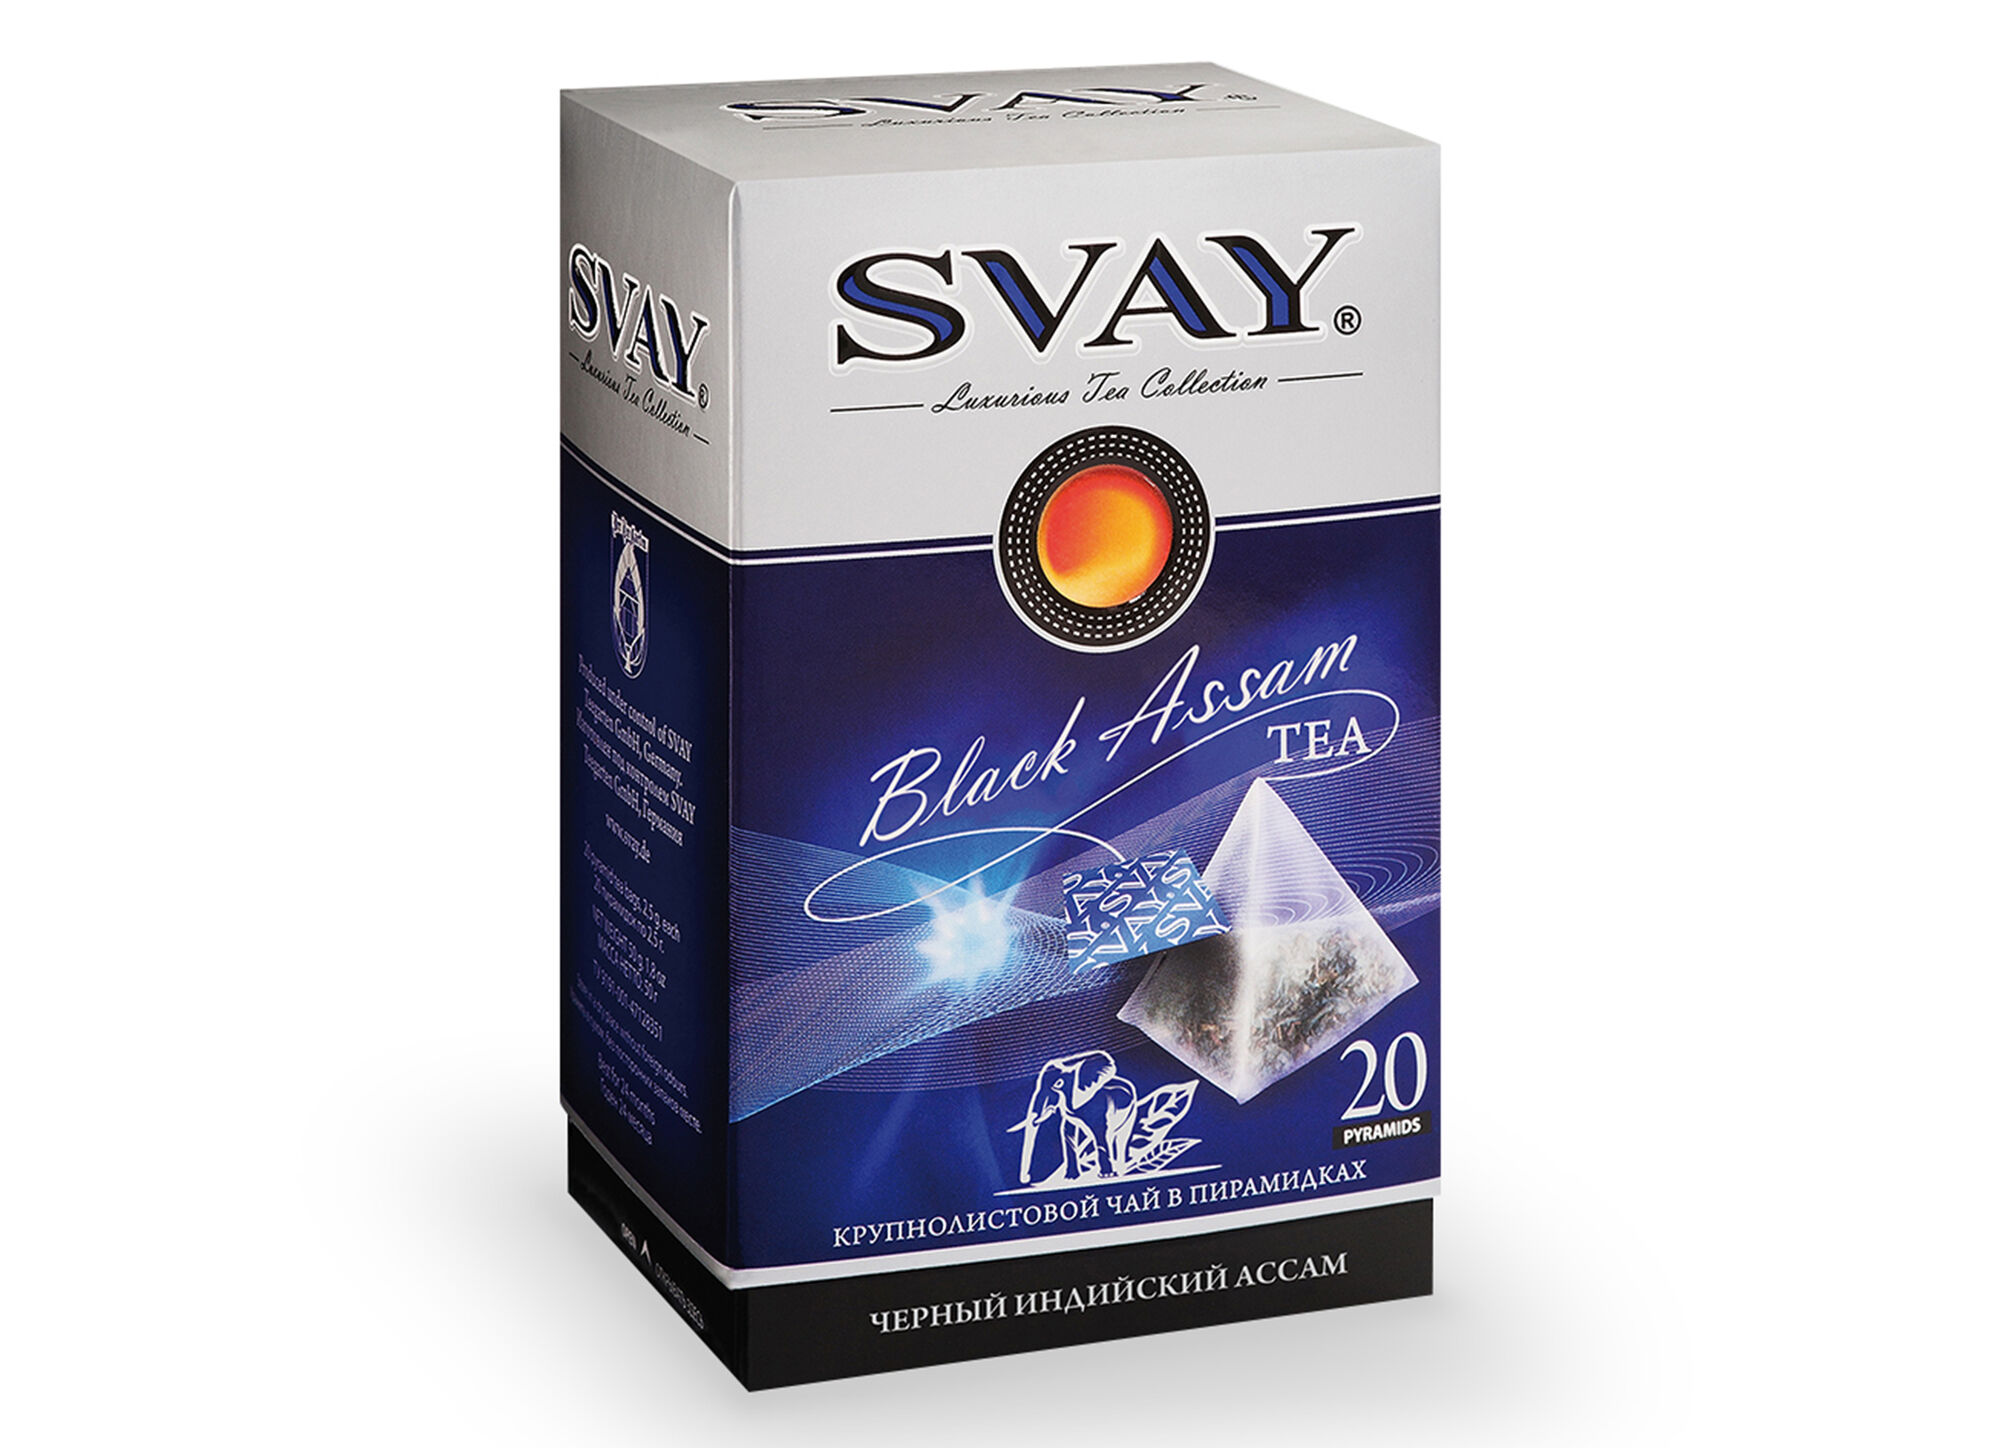 Чай СВ-Svay Black Assam черный 20х2.5 пирамидки (в коробке 12 шт)